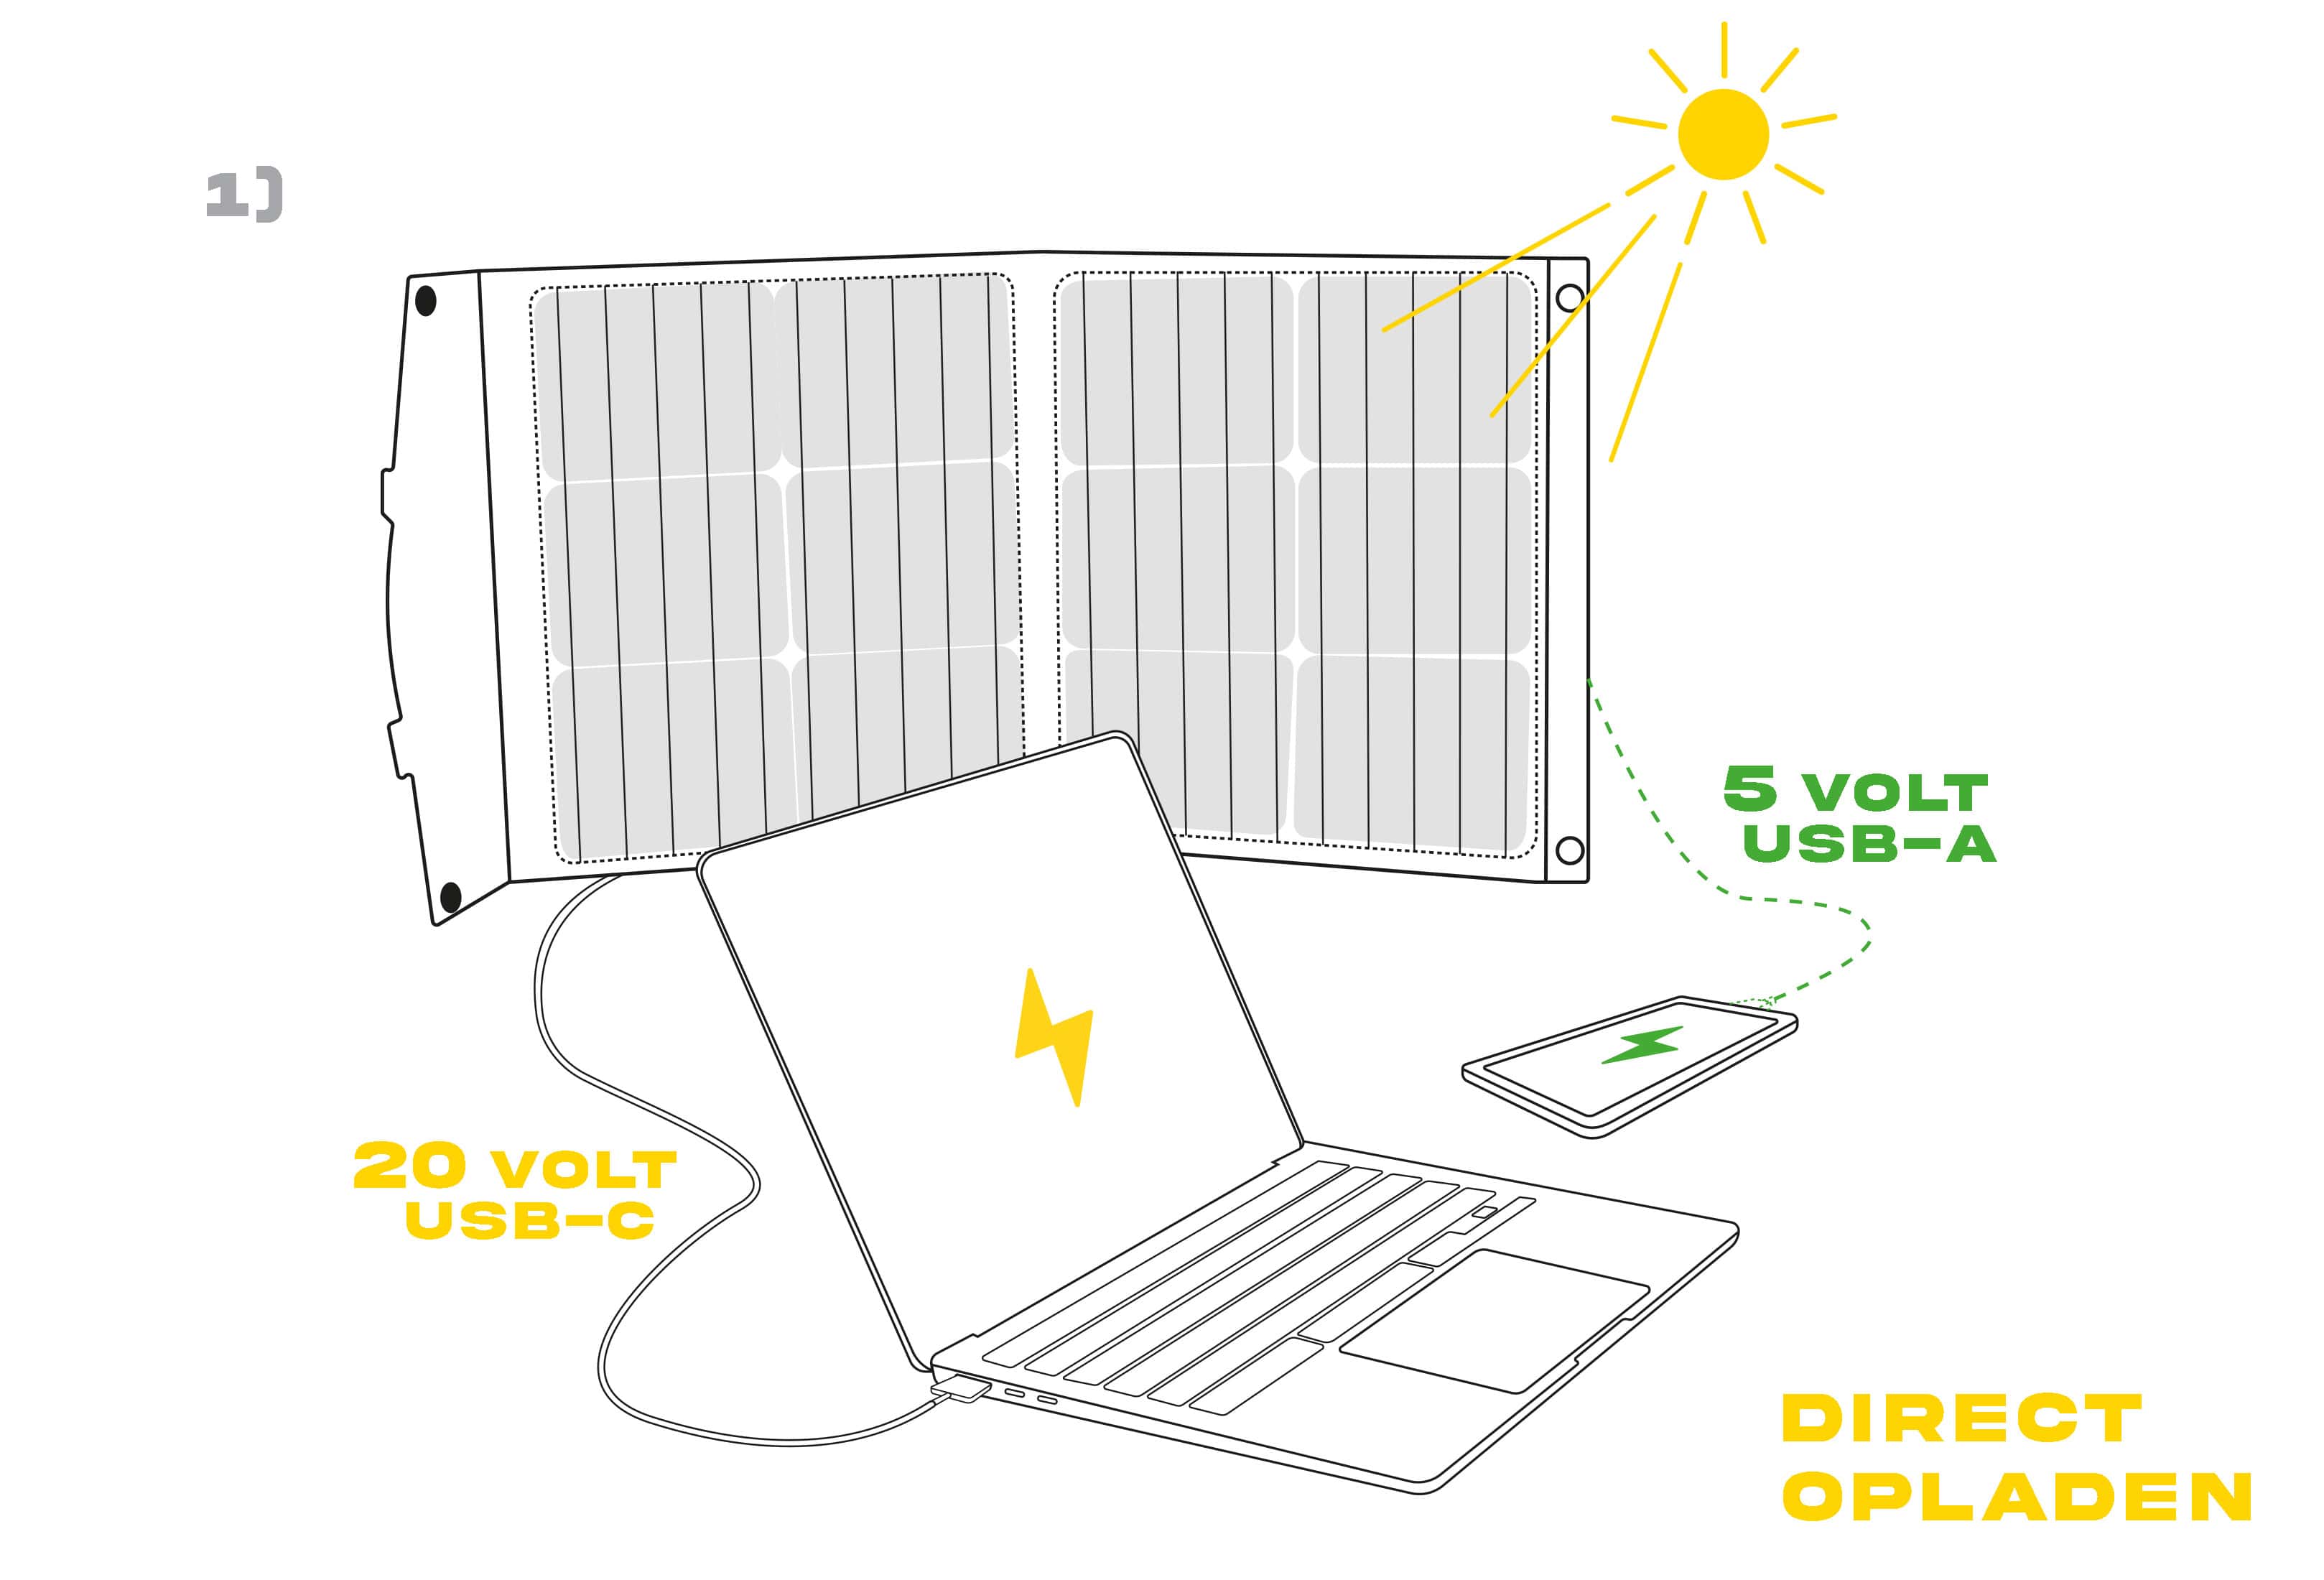 Zonnepaneel onder de zon voor het opladen van een computer (20 volt USB-C) en een smartphone (5 volt USB-A)